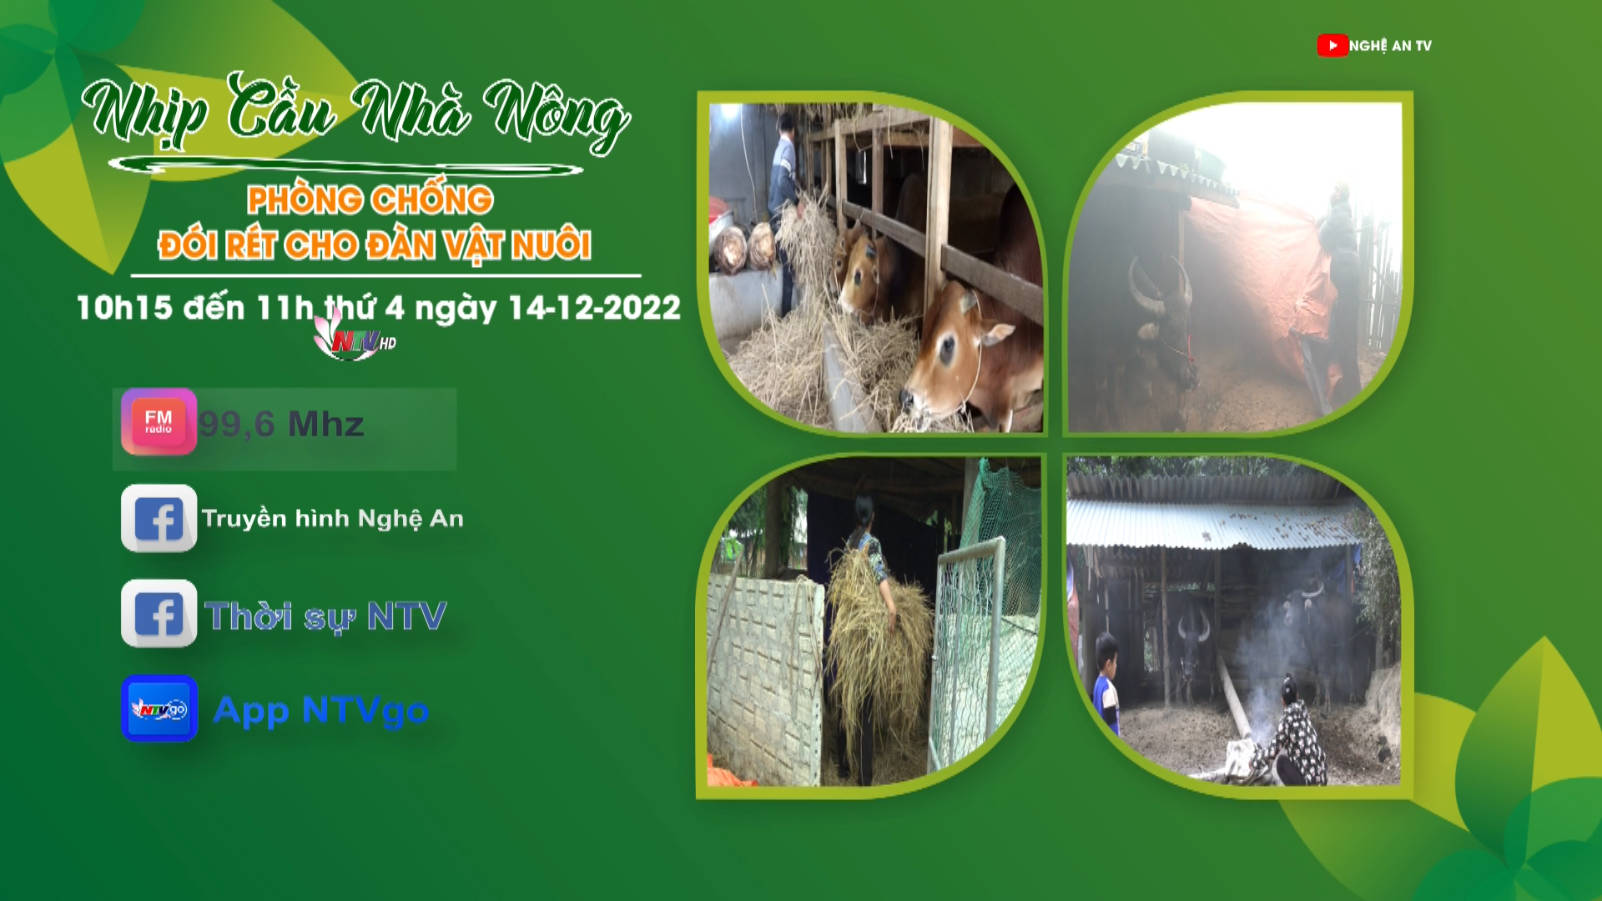 Nhịp cầu nhà nông: Phòng chống đói rét cho đàn vật nuôi